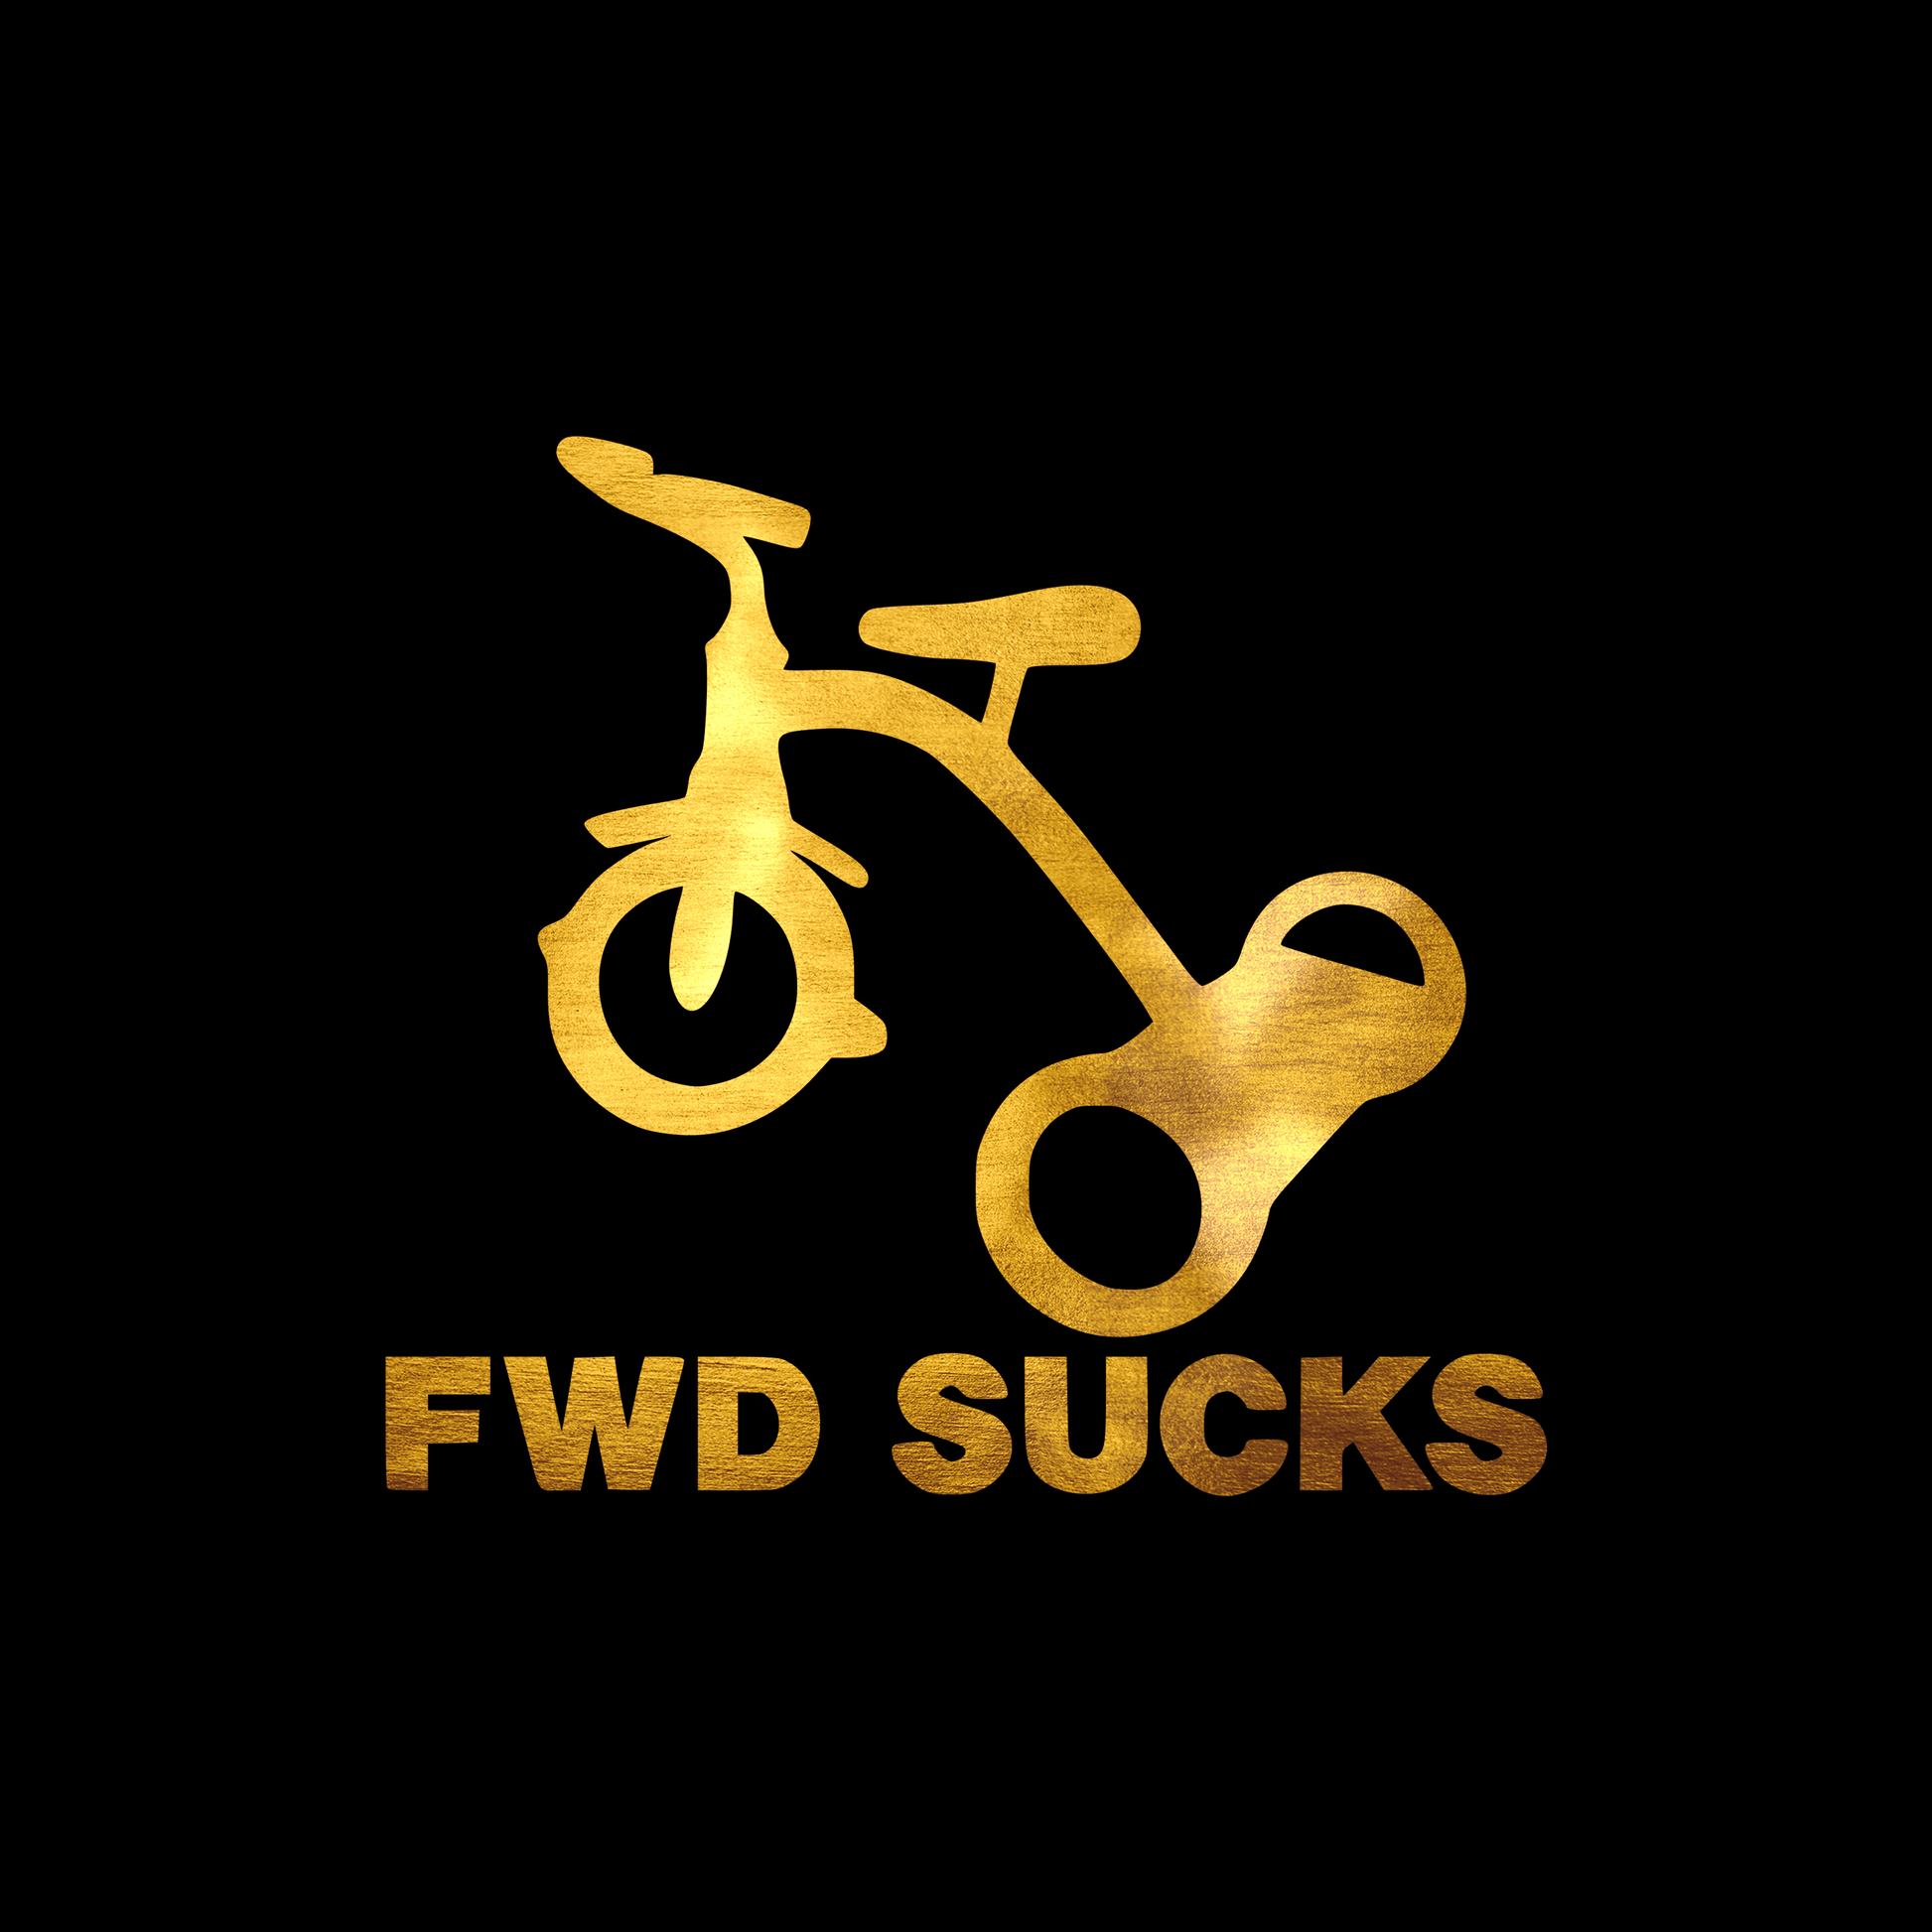 FWD sucks sticker decal